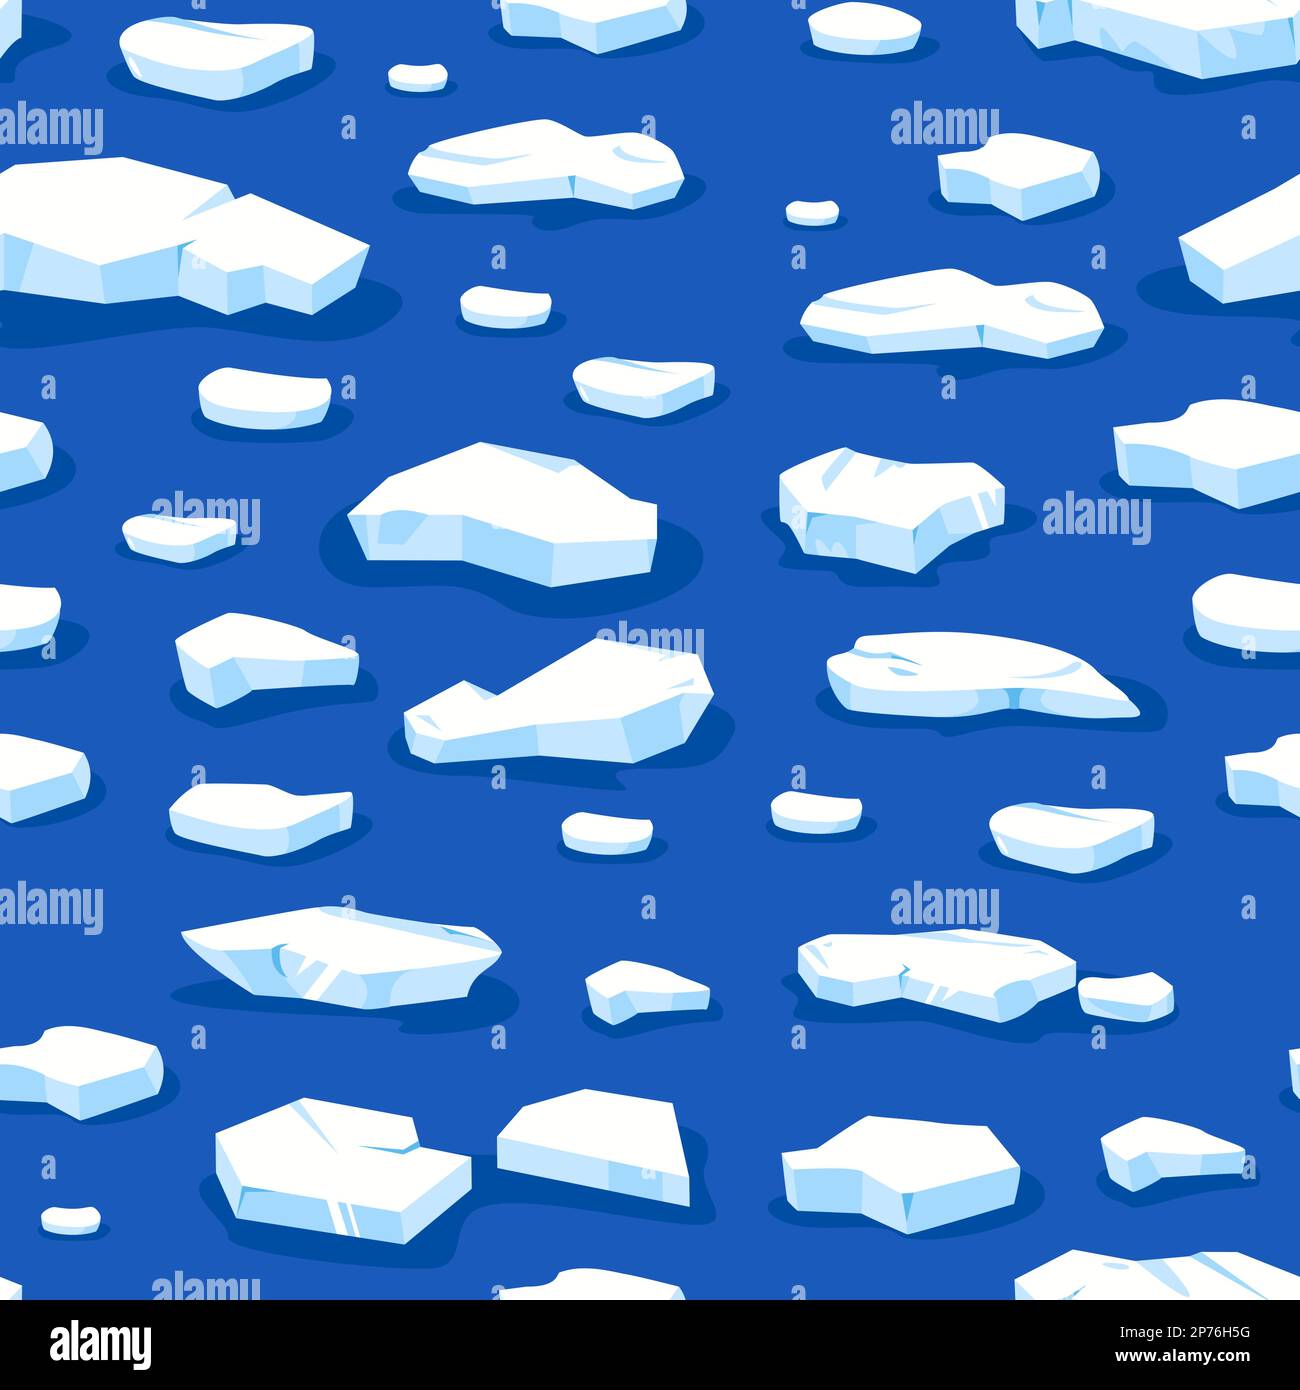 Modello di ghiaccio FLOES. Stampa senza cuciture con pezzi di ghiacciaio surgelati blu e iceberg galleggianti, frammenti glaciali per l'avvolgimento di tessuto di carta. Vettore Illustrazione Vettoriale